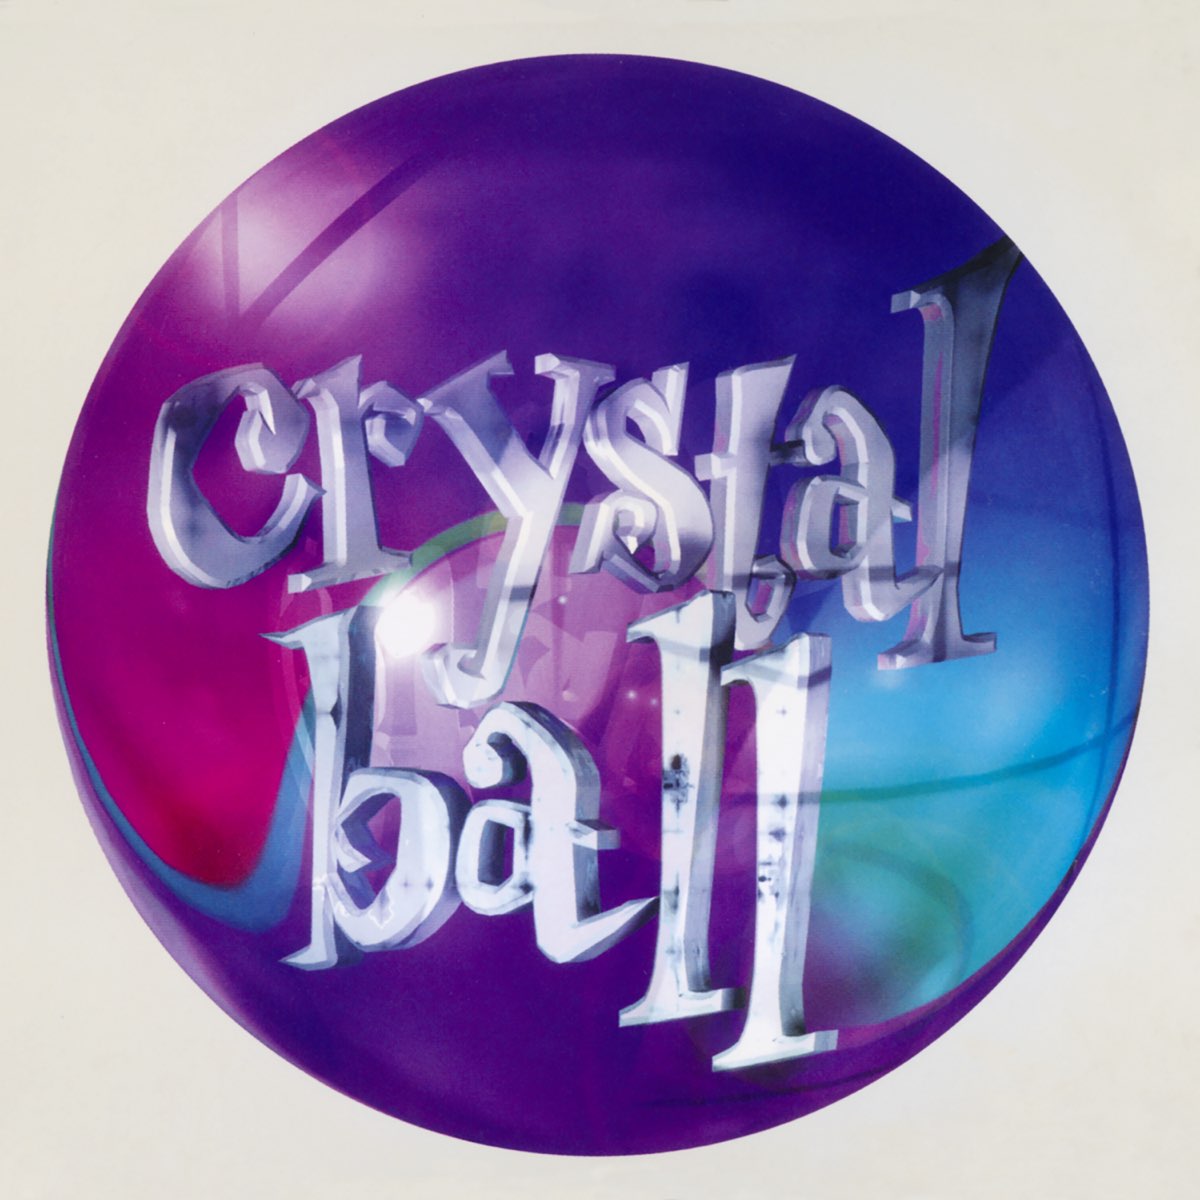 Prince Crystal Ball cover artwork